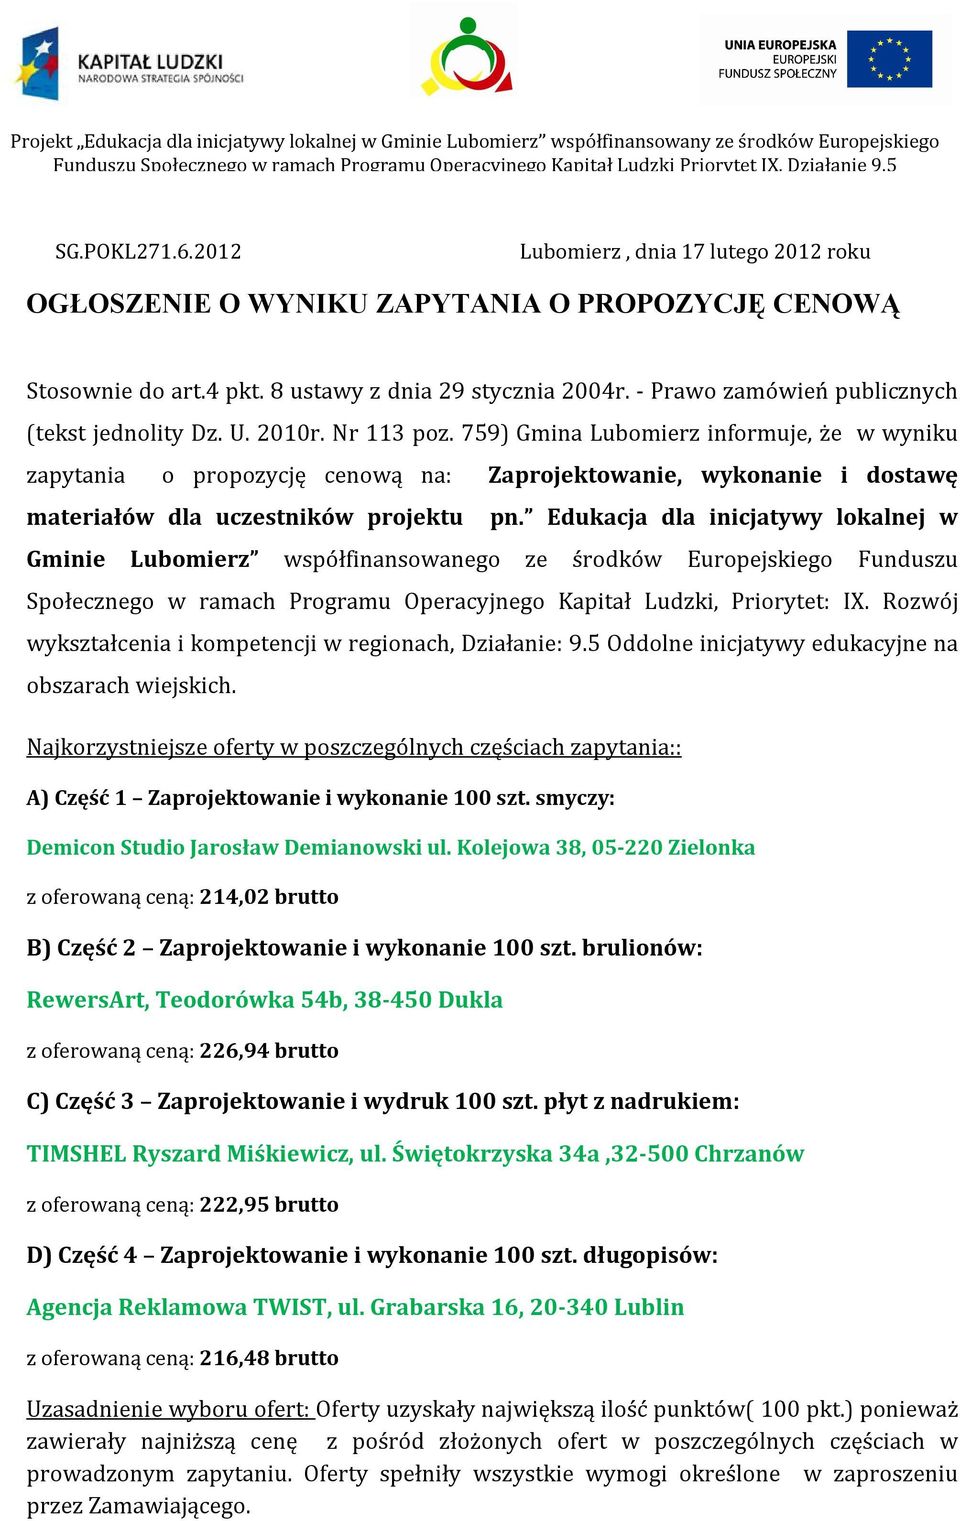 759) Gmina Lubomierz informuje, że w wyniku zapytania o propozycję cenową na: Zaprojektowanie, wykonanie i dostawę materiałów dla uczestników projektu pn.